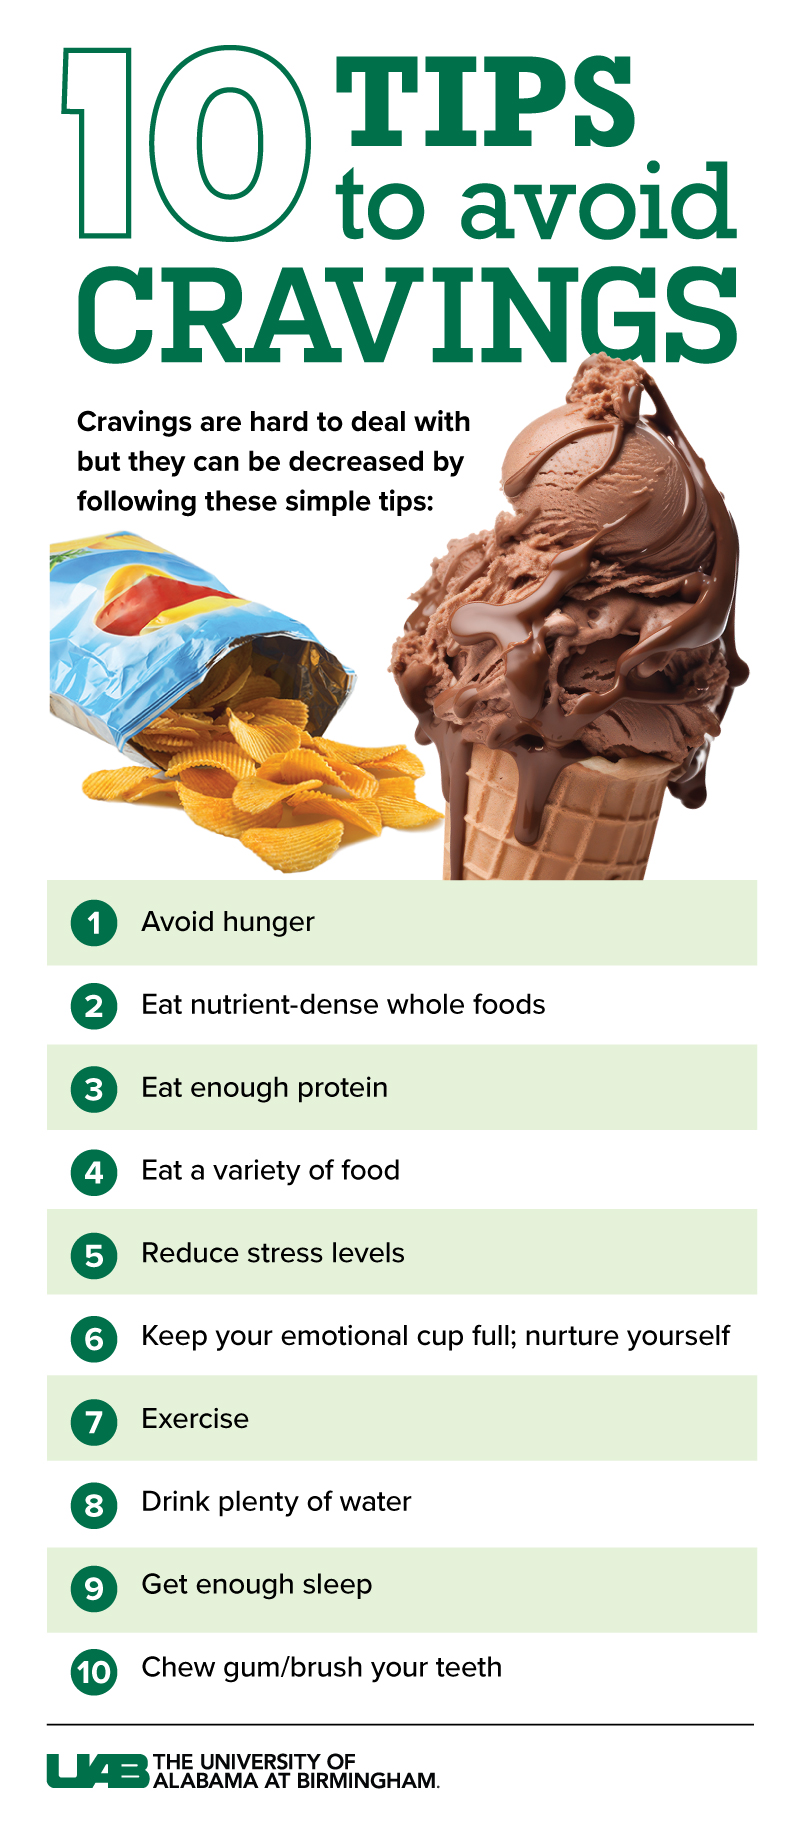 Managing food cravings